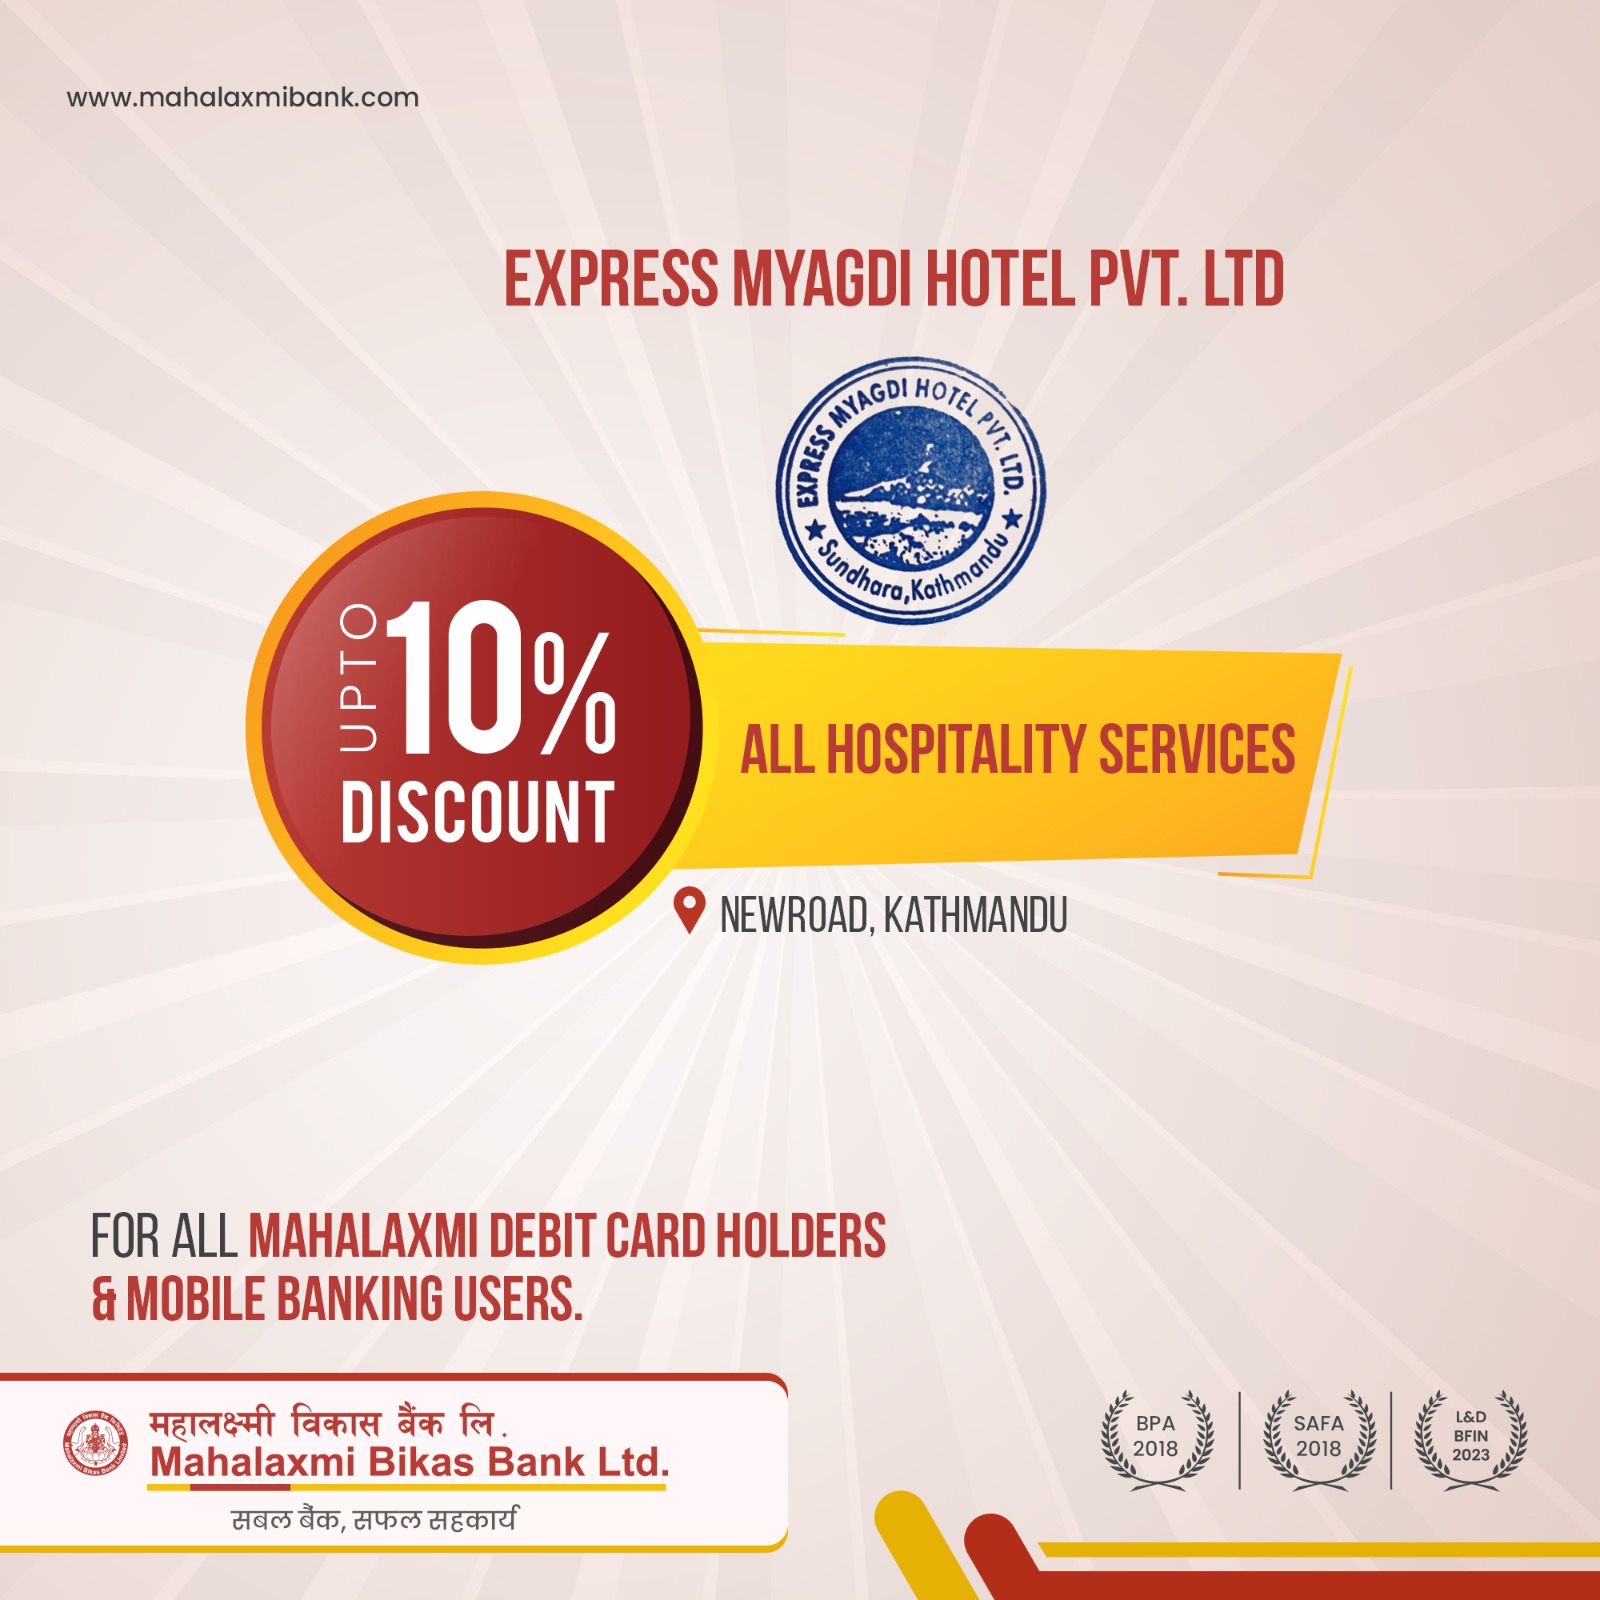 Express Myagdi Hotel Pvt. Ltd.